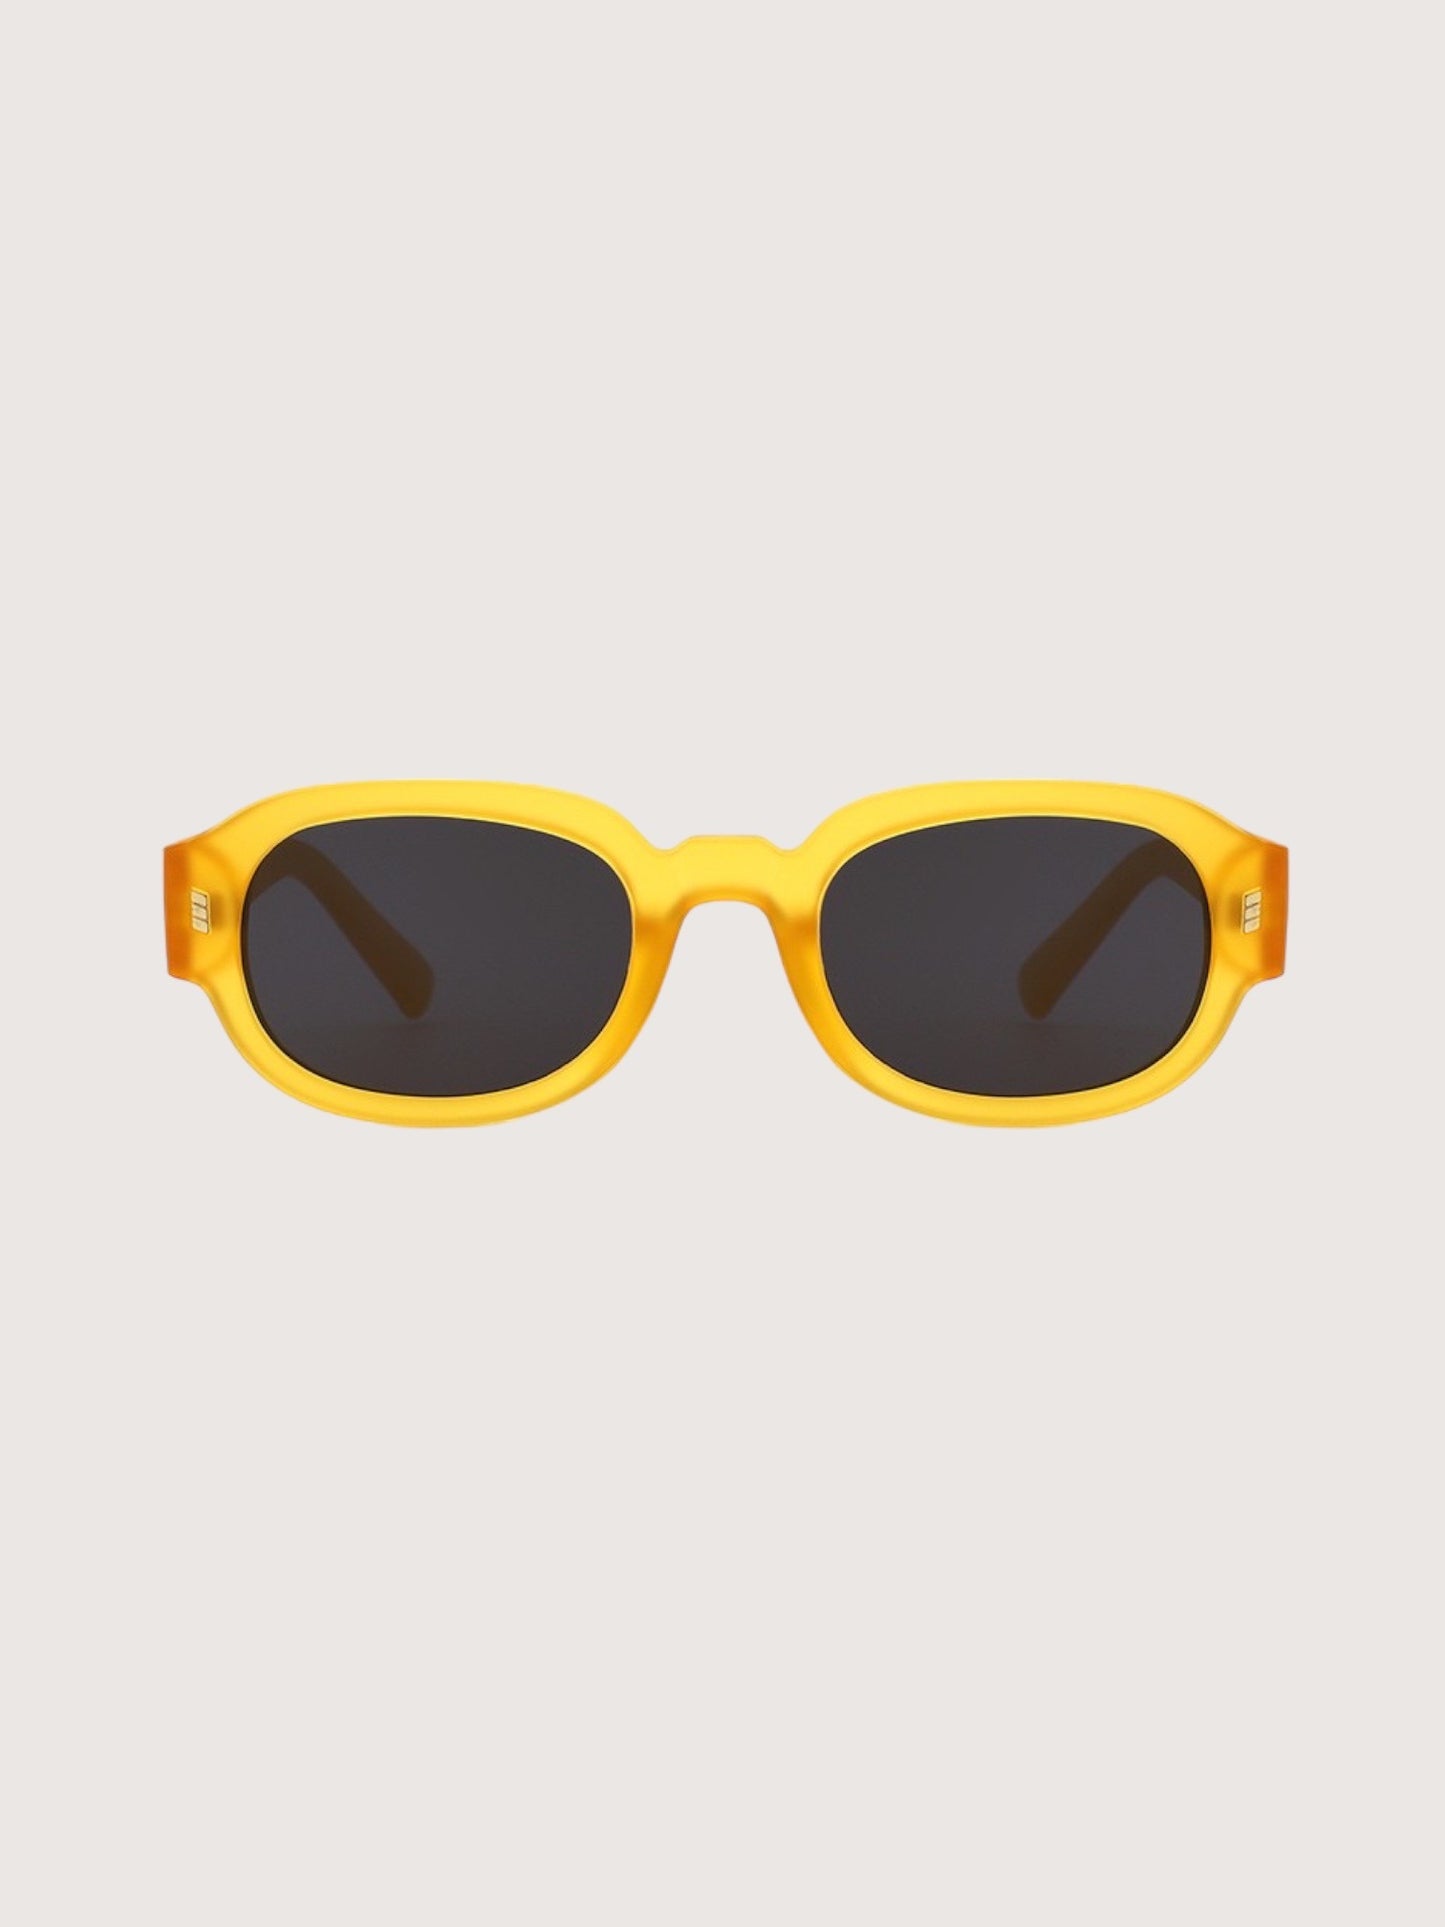 Round Retro Sunglasses | Yellow